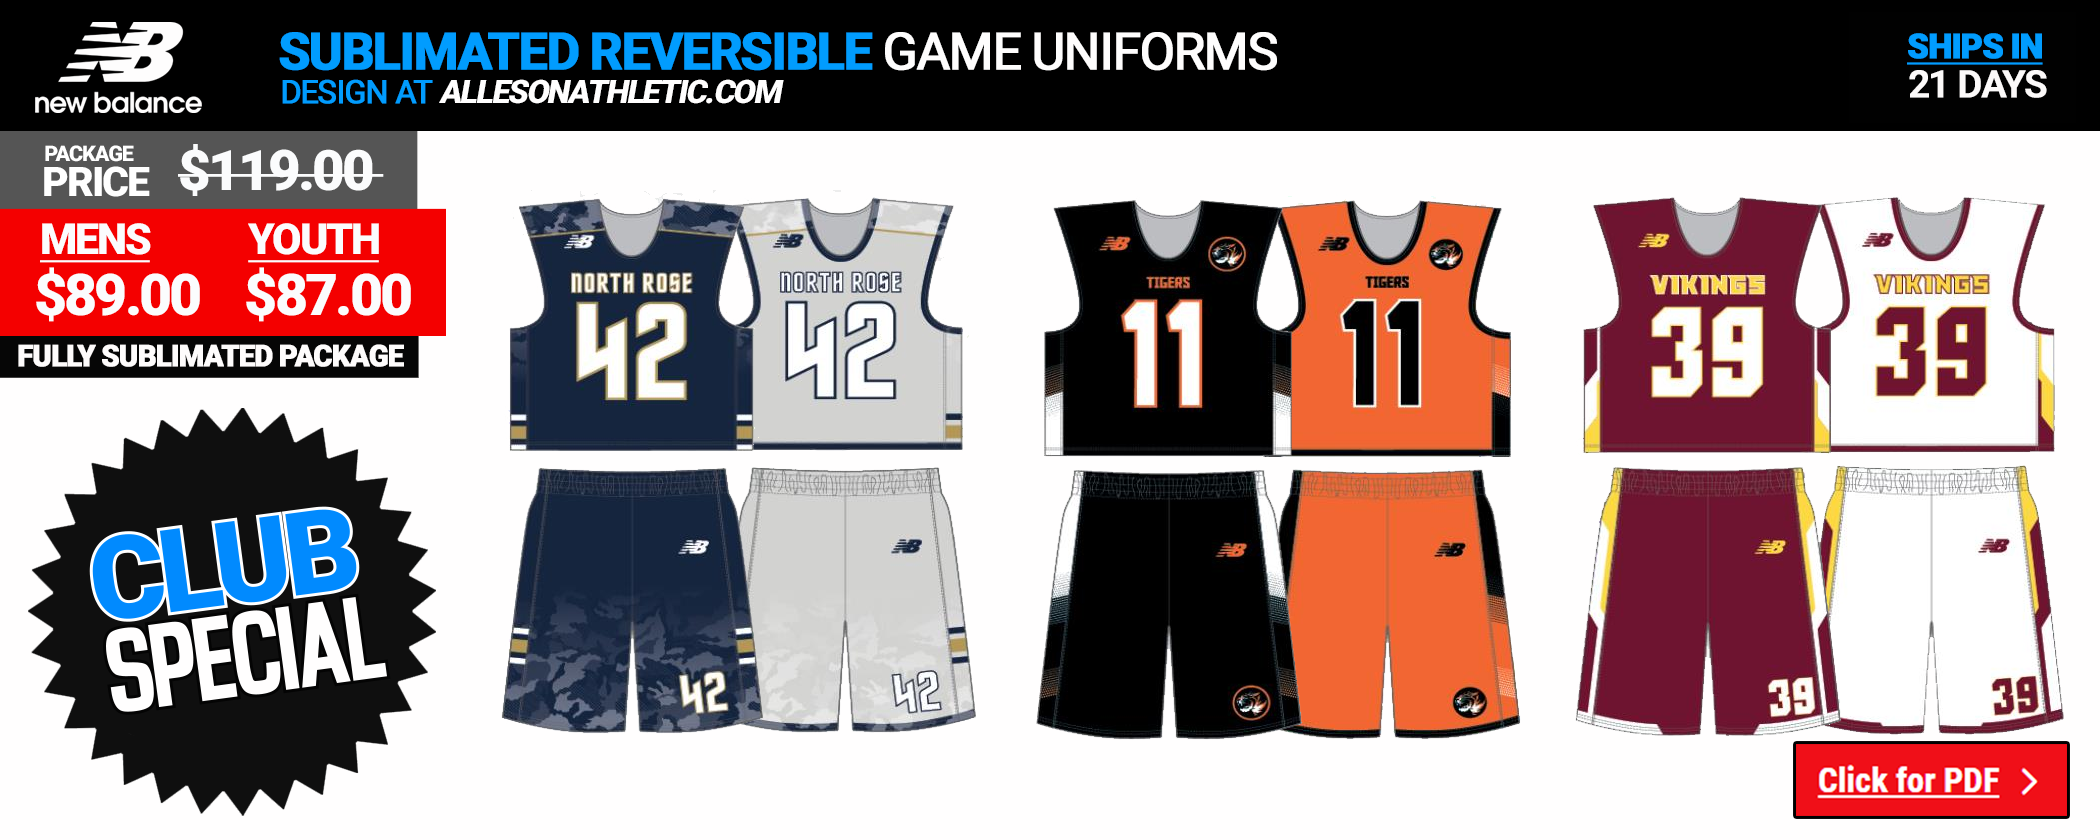 Mens Lacrosse Uniforms Sublimated Reversibles